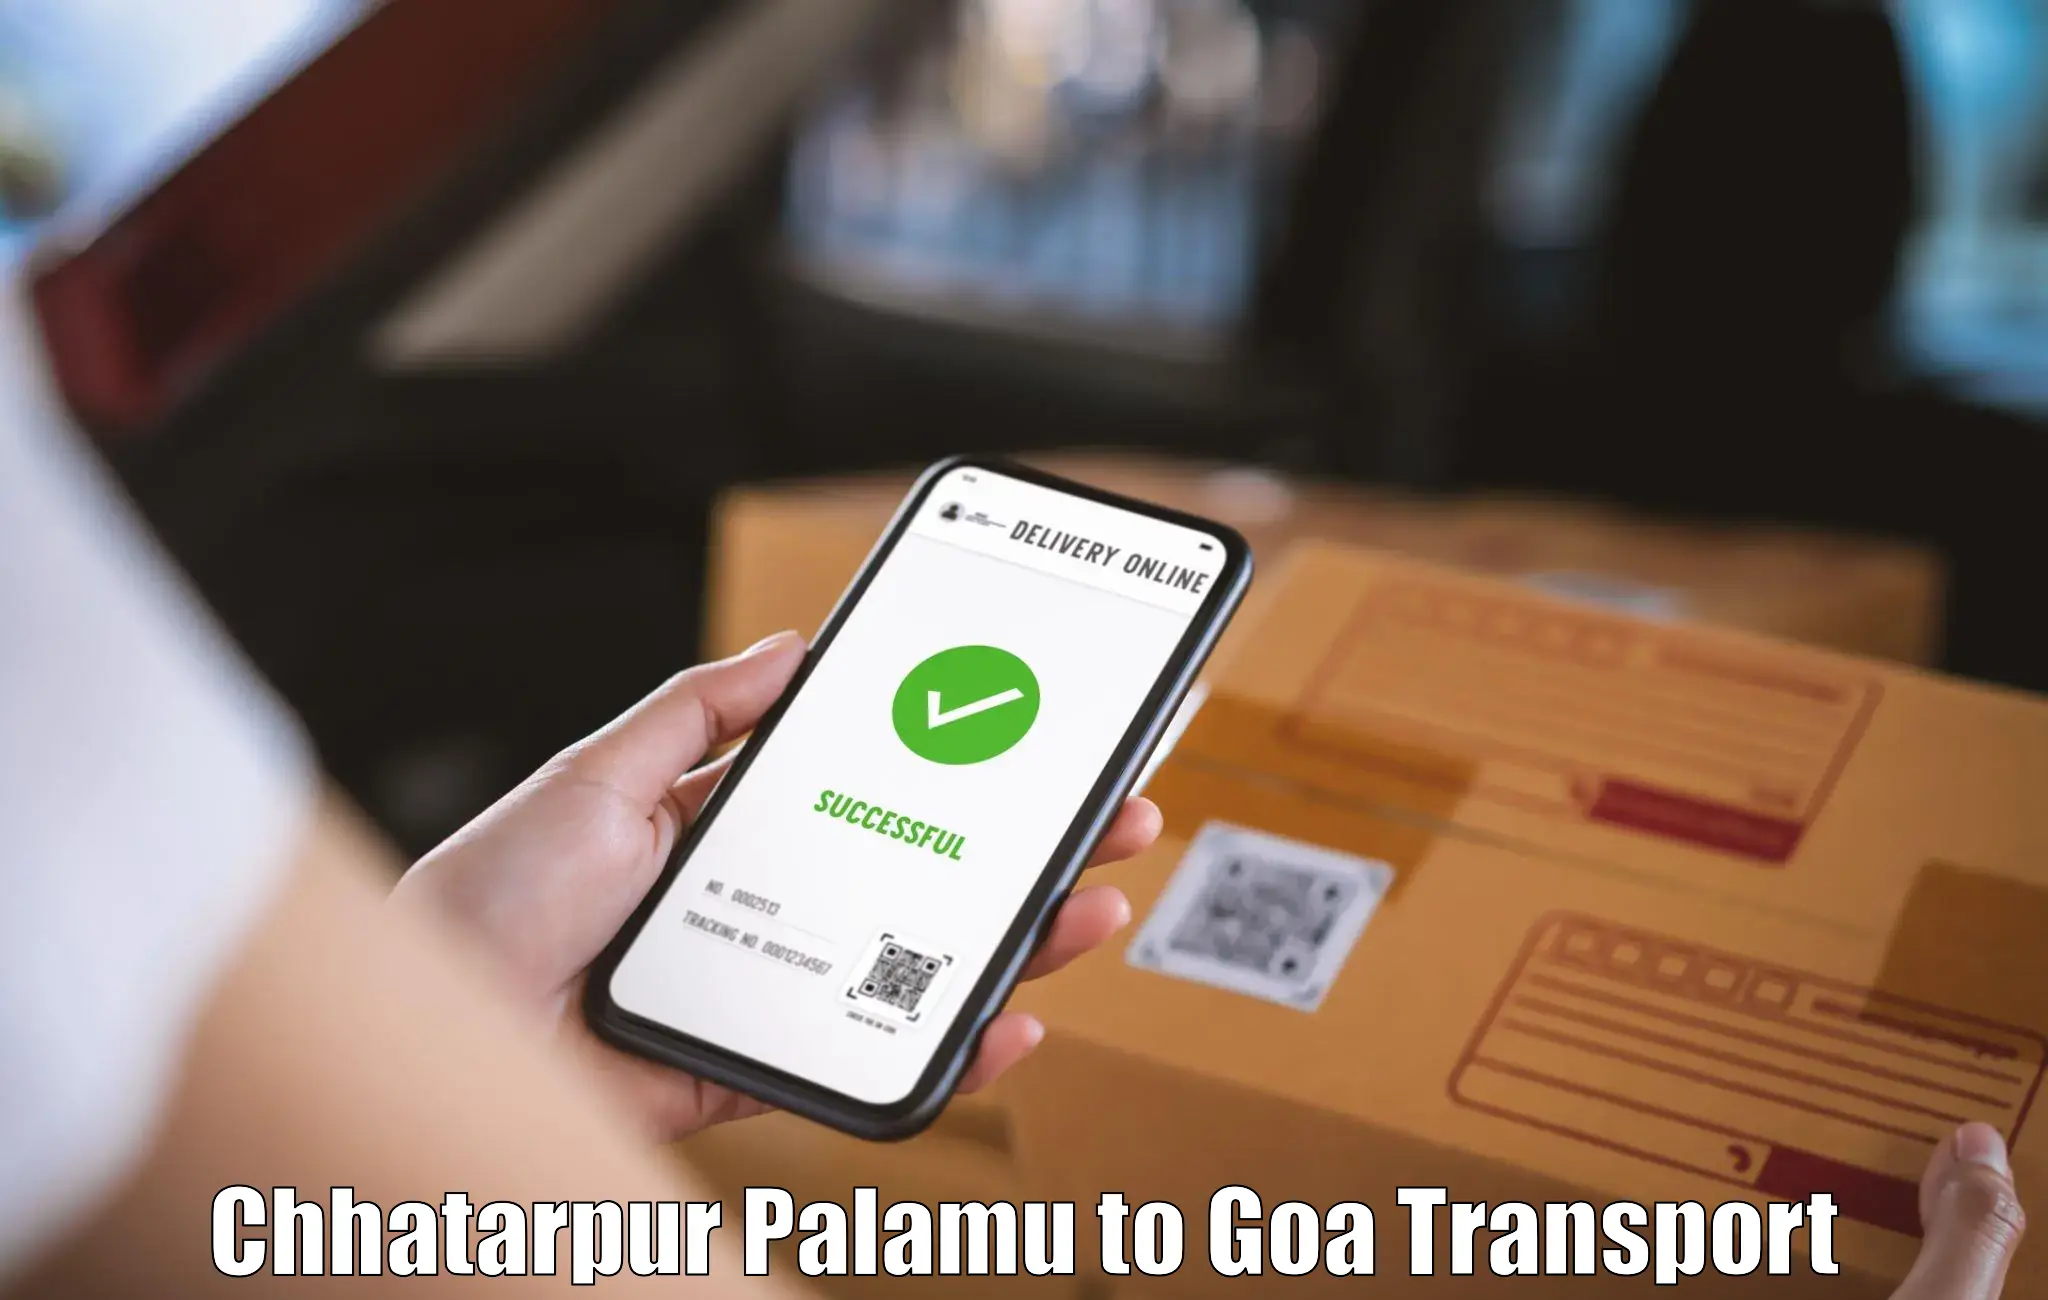 Lorry transport service Chhatarpur Palamu to Goa University